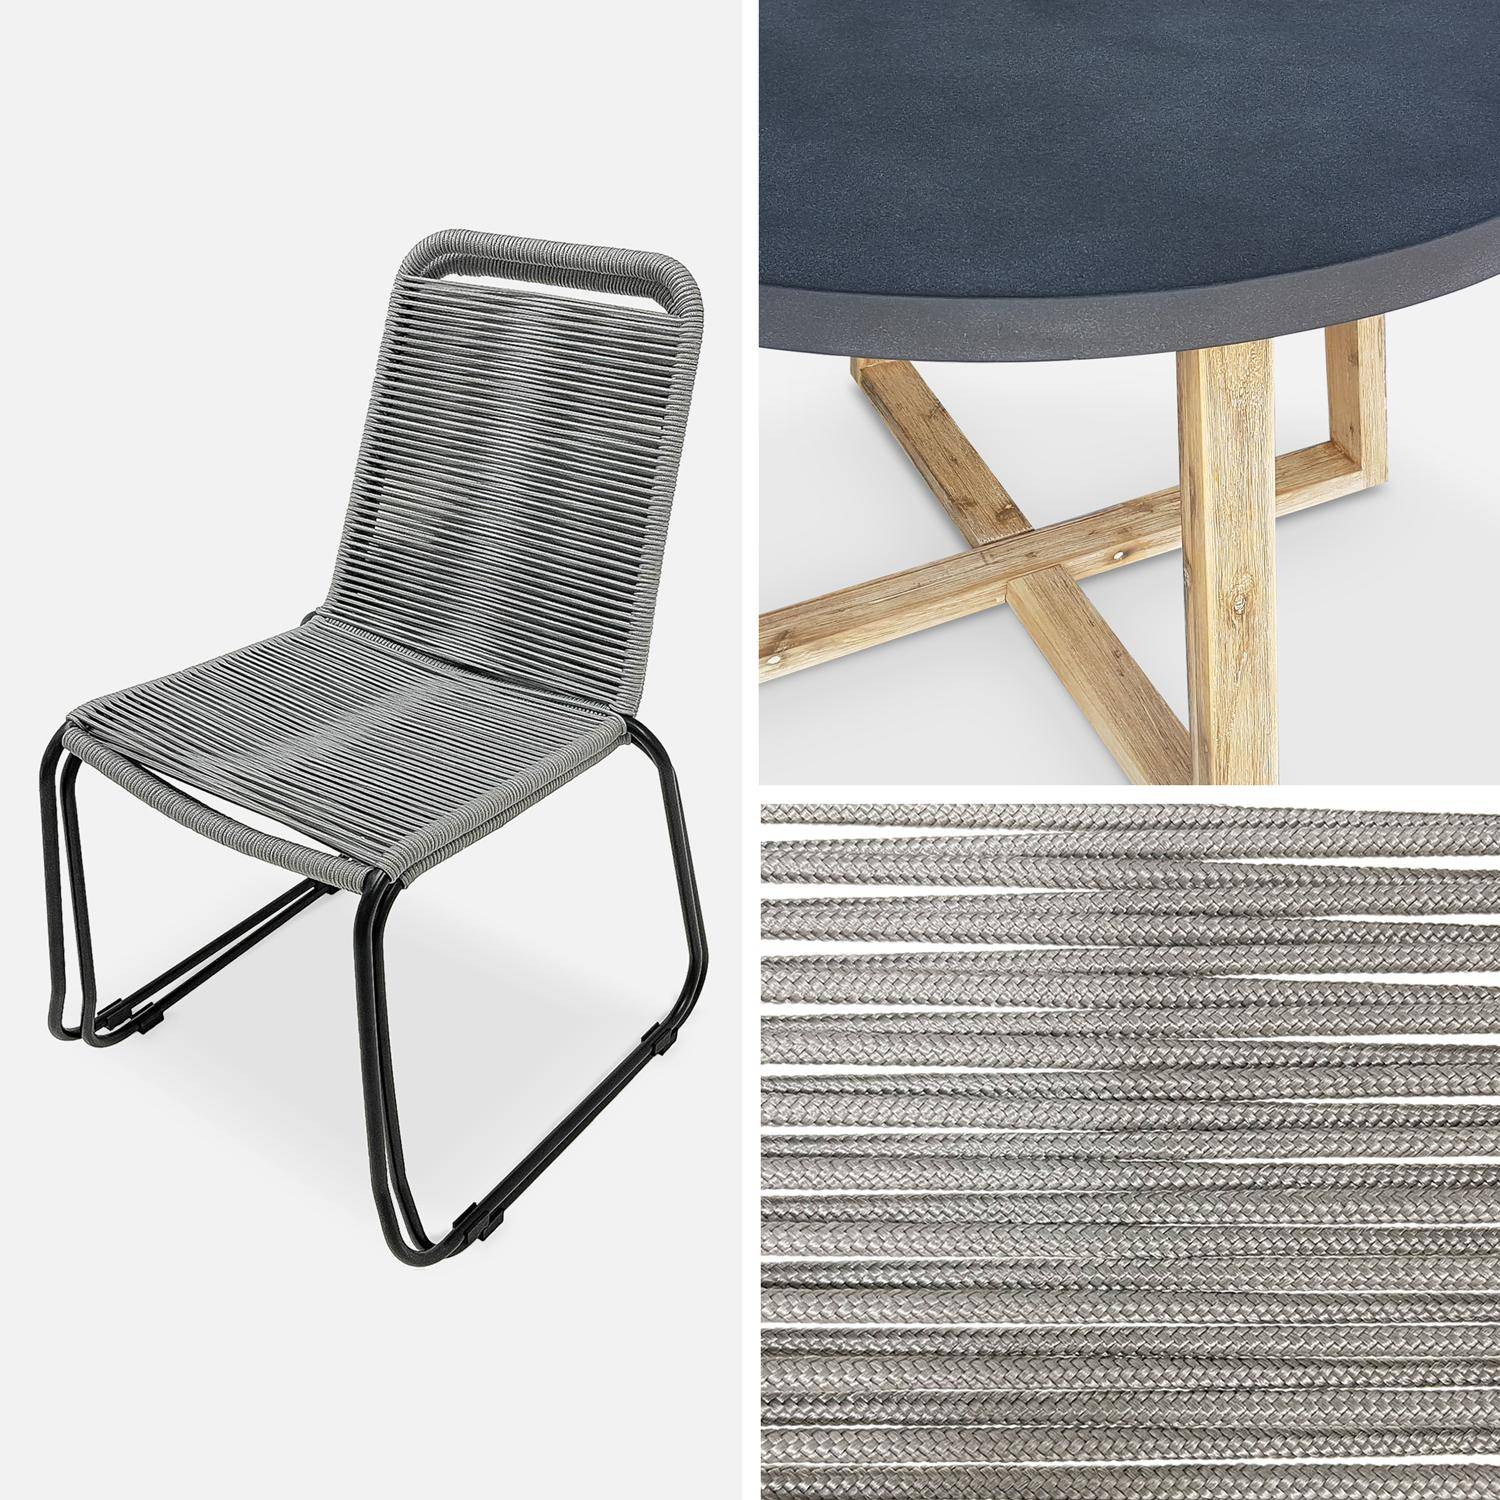 Table de jardin ronde en fibre de ciment, effet béton,  Ø120cm Borneo et chaises de jardin Brasilia en corde gris clair empilables Photo4